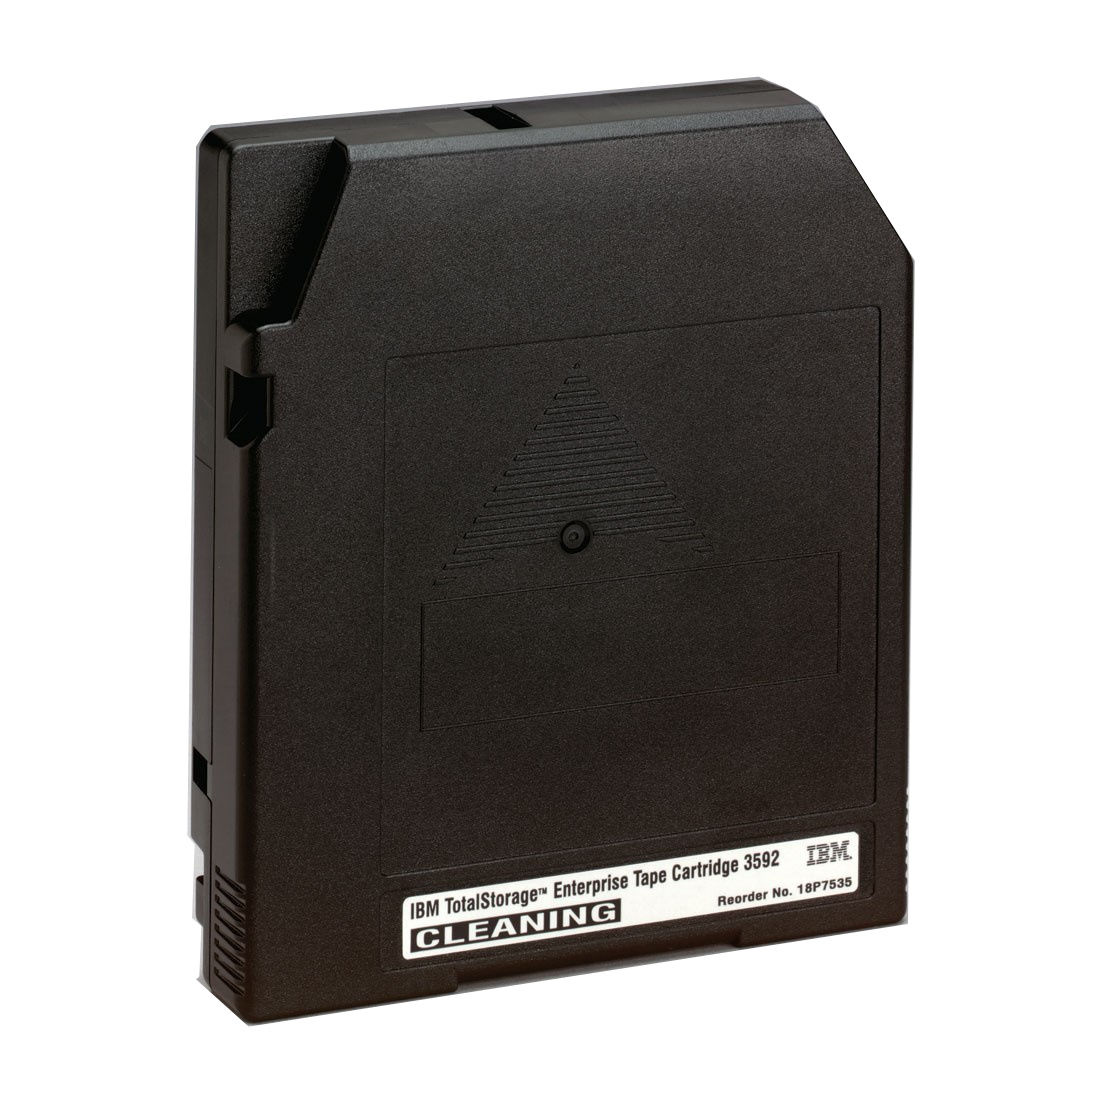 IBM Enterprise 3592 Cleaning Tape Cartridge -18P7535